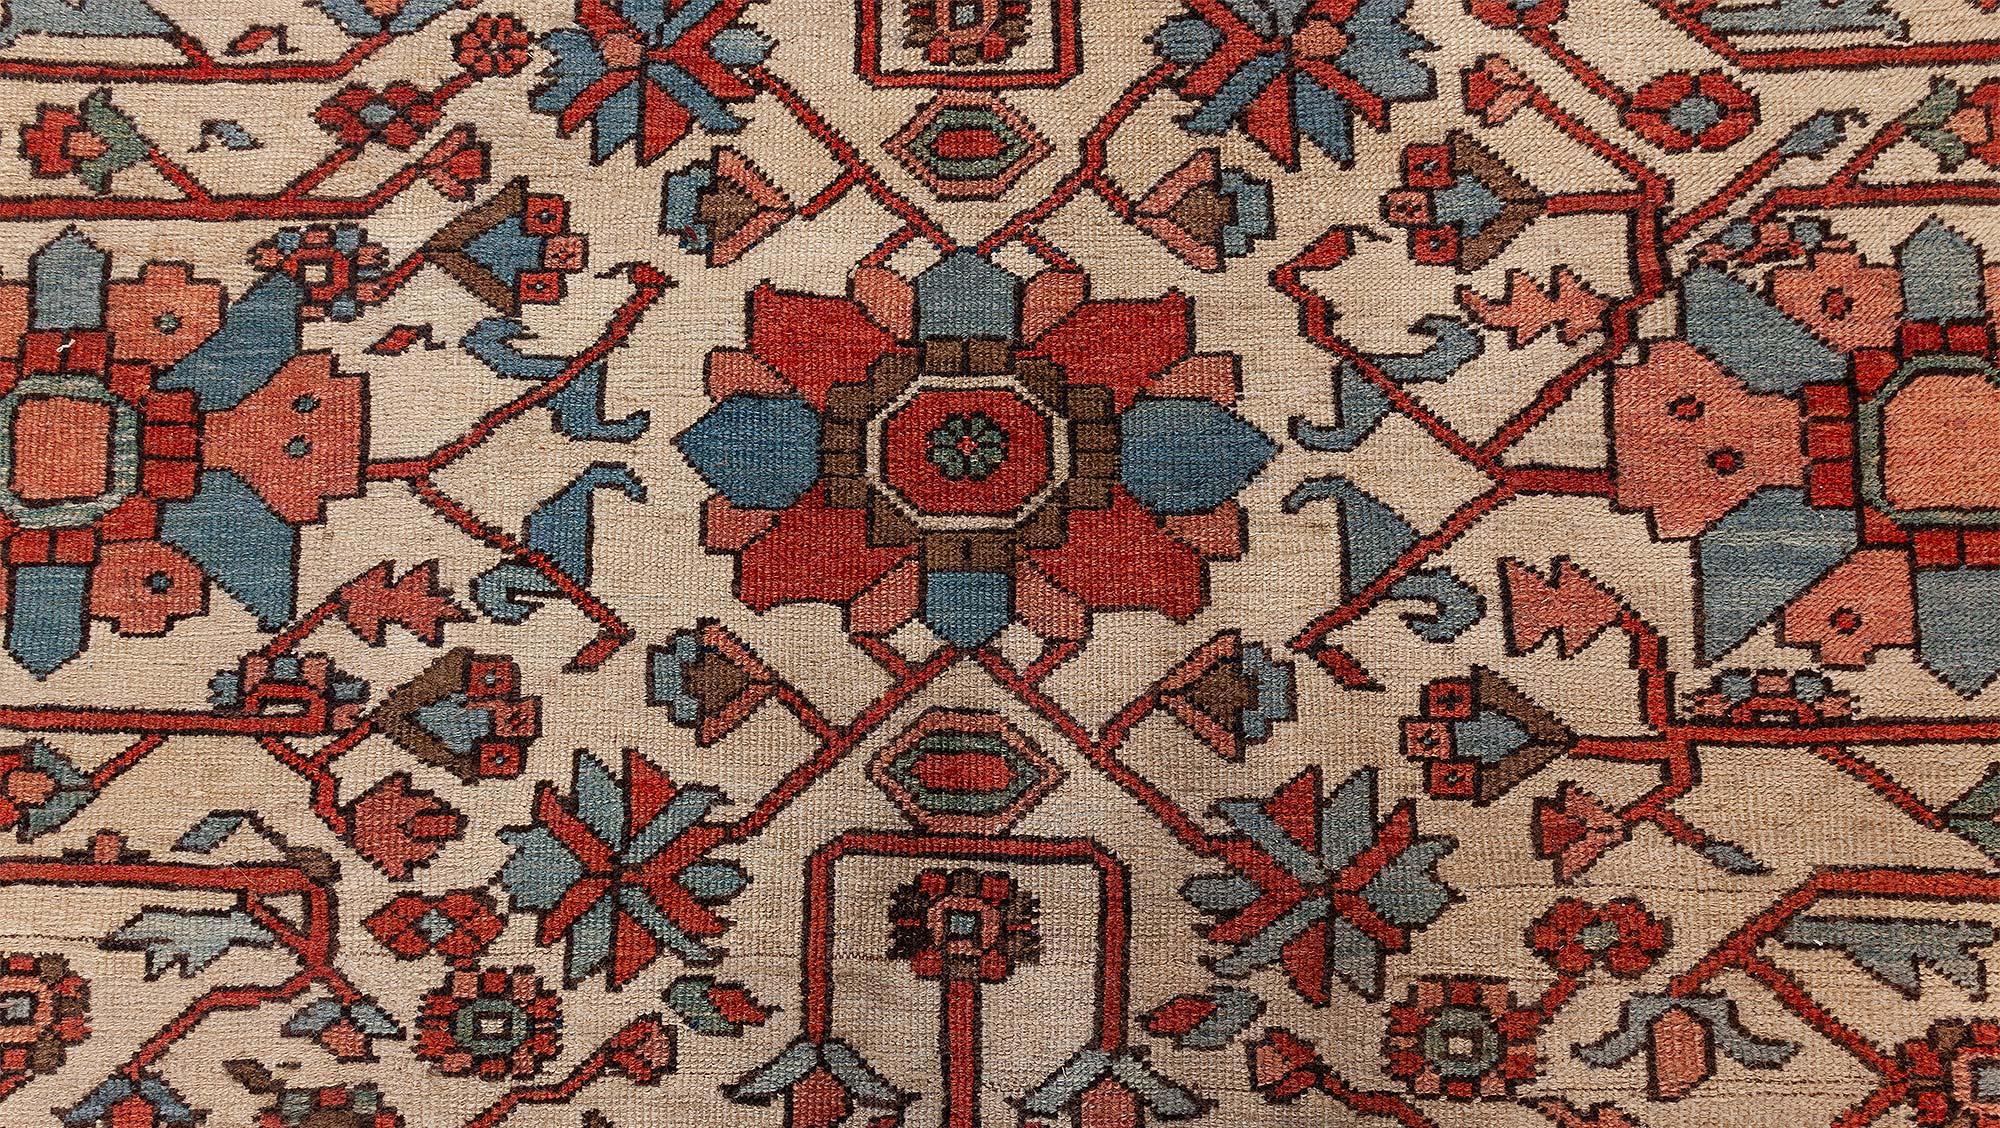 Antique Persian Heriz Rug
Size: 10'0